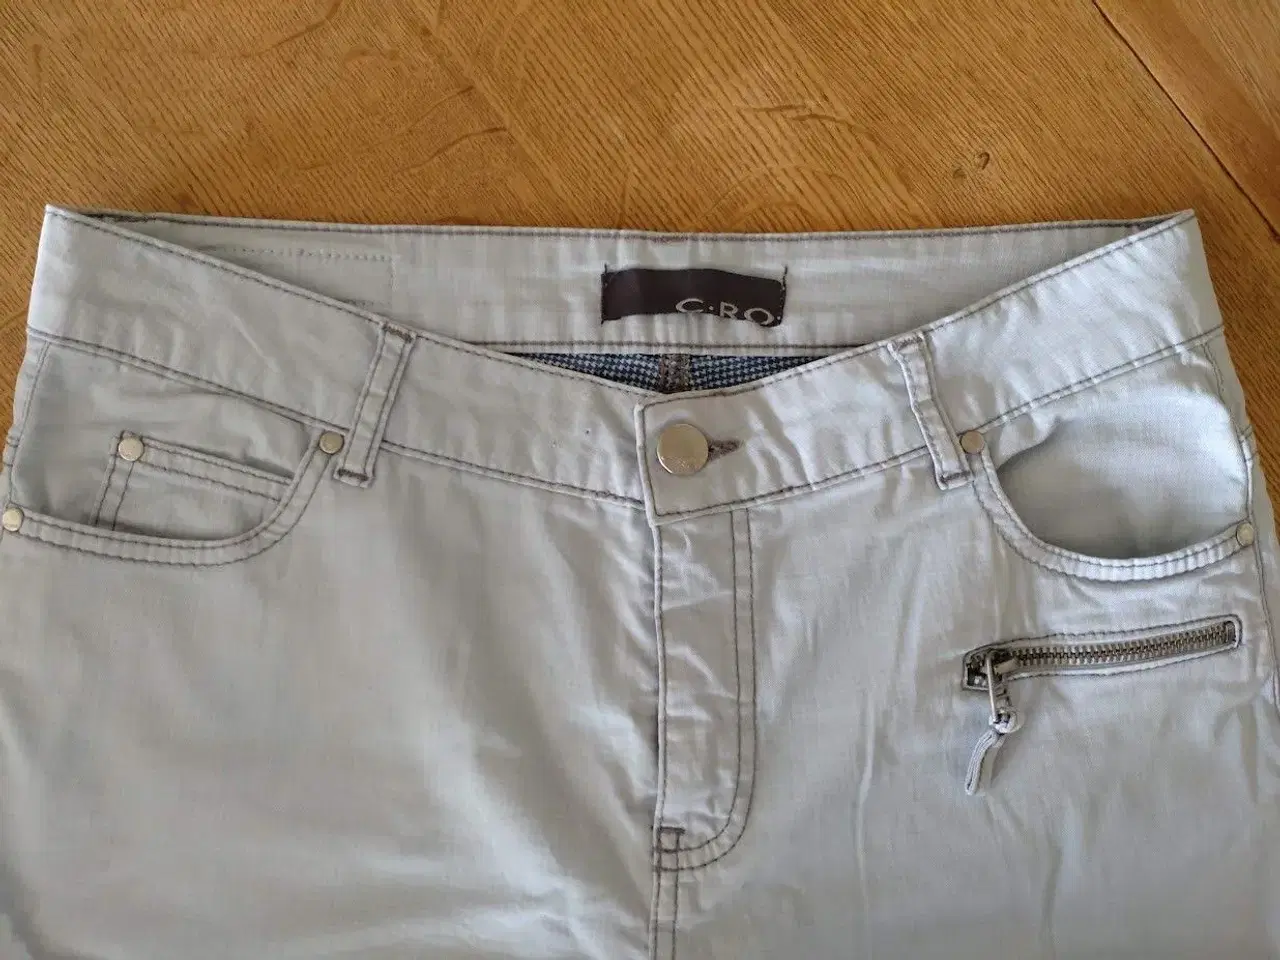 Billede 3 - C-RO bukser i lækker kvalitet og god pasform